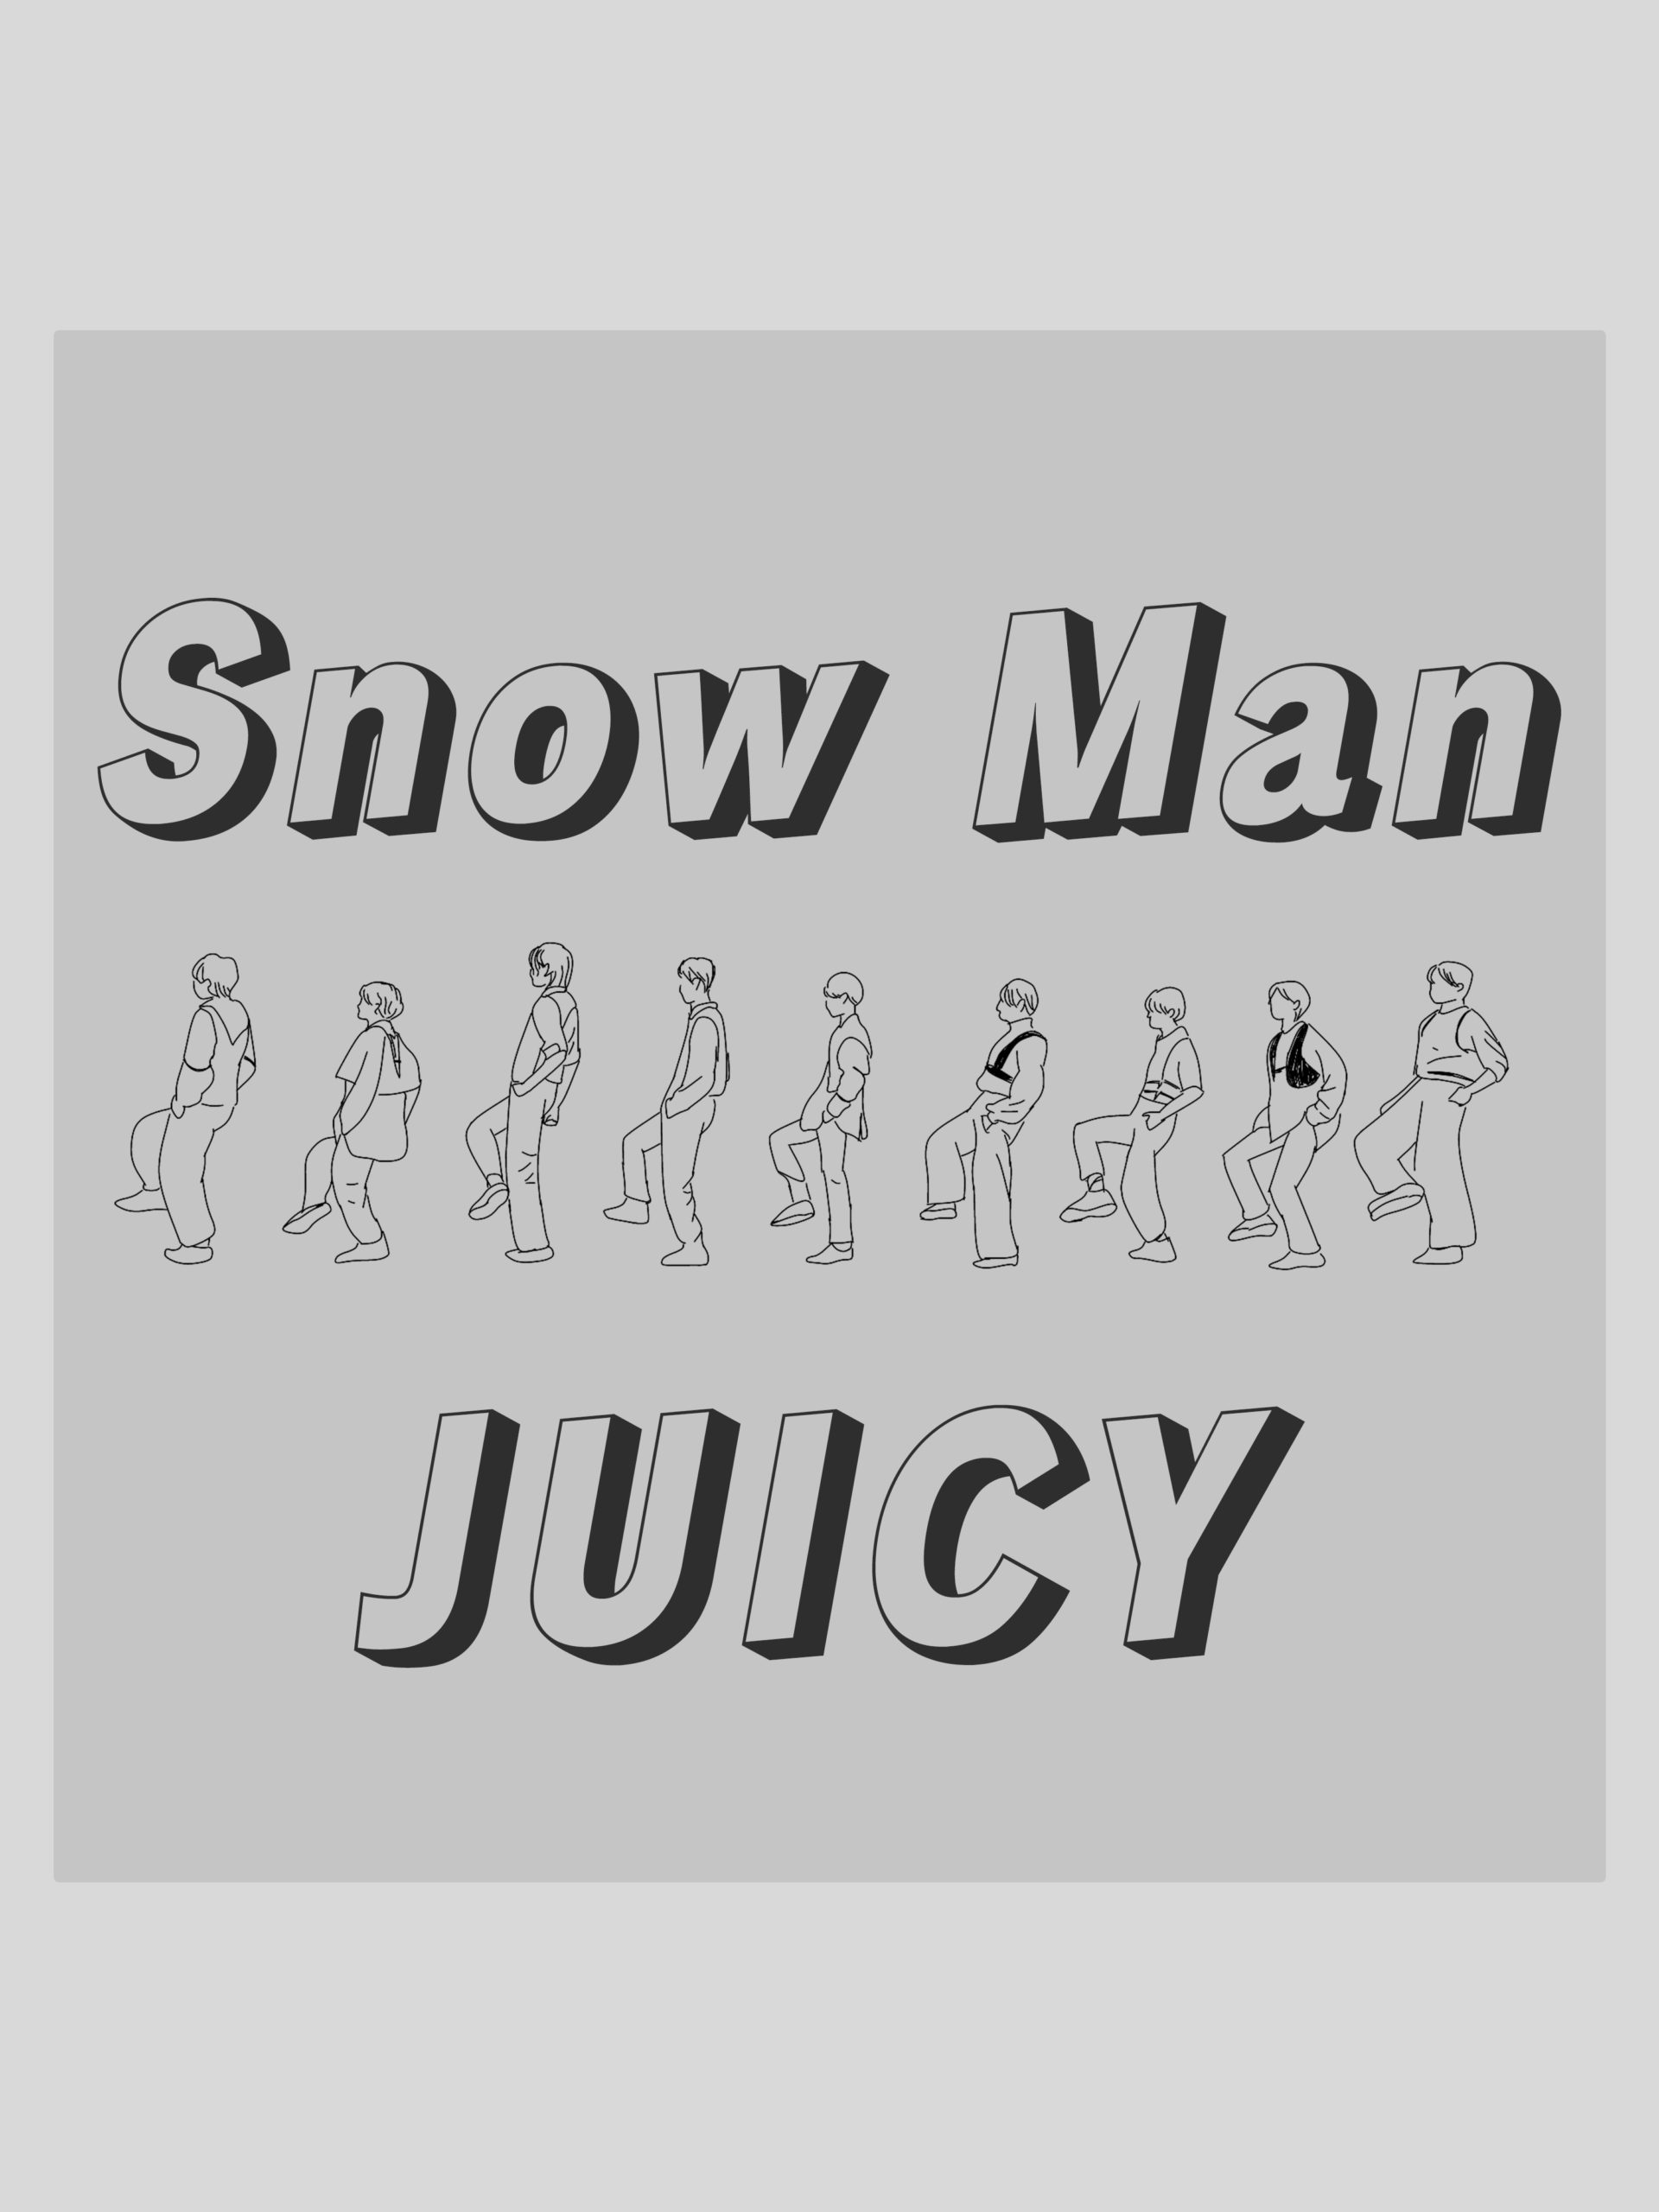 Snow Man/JUICY